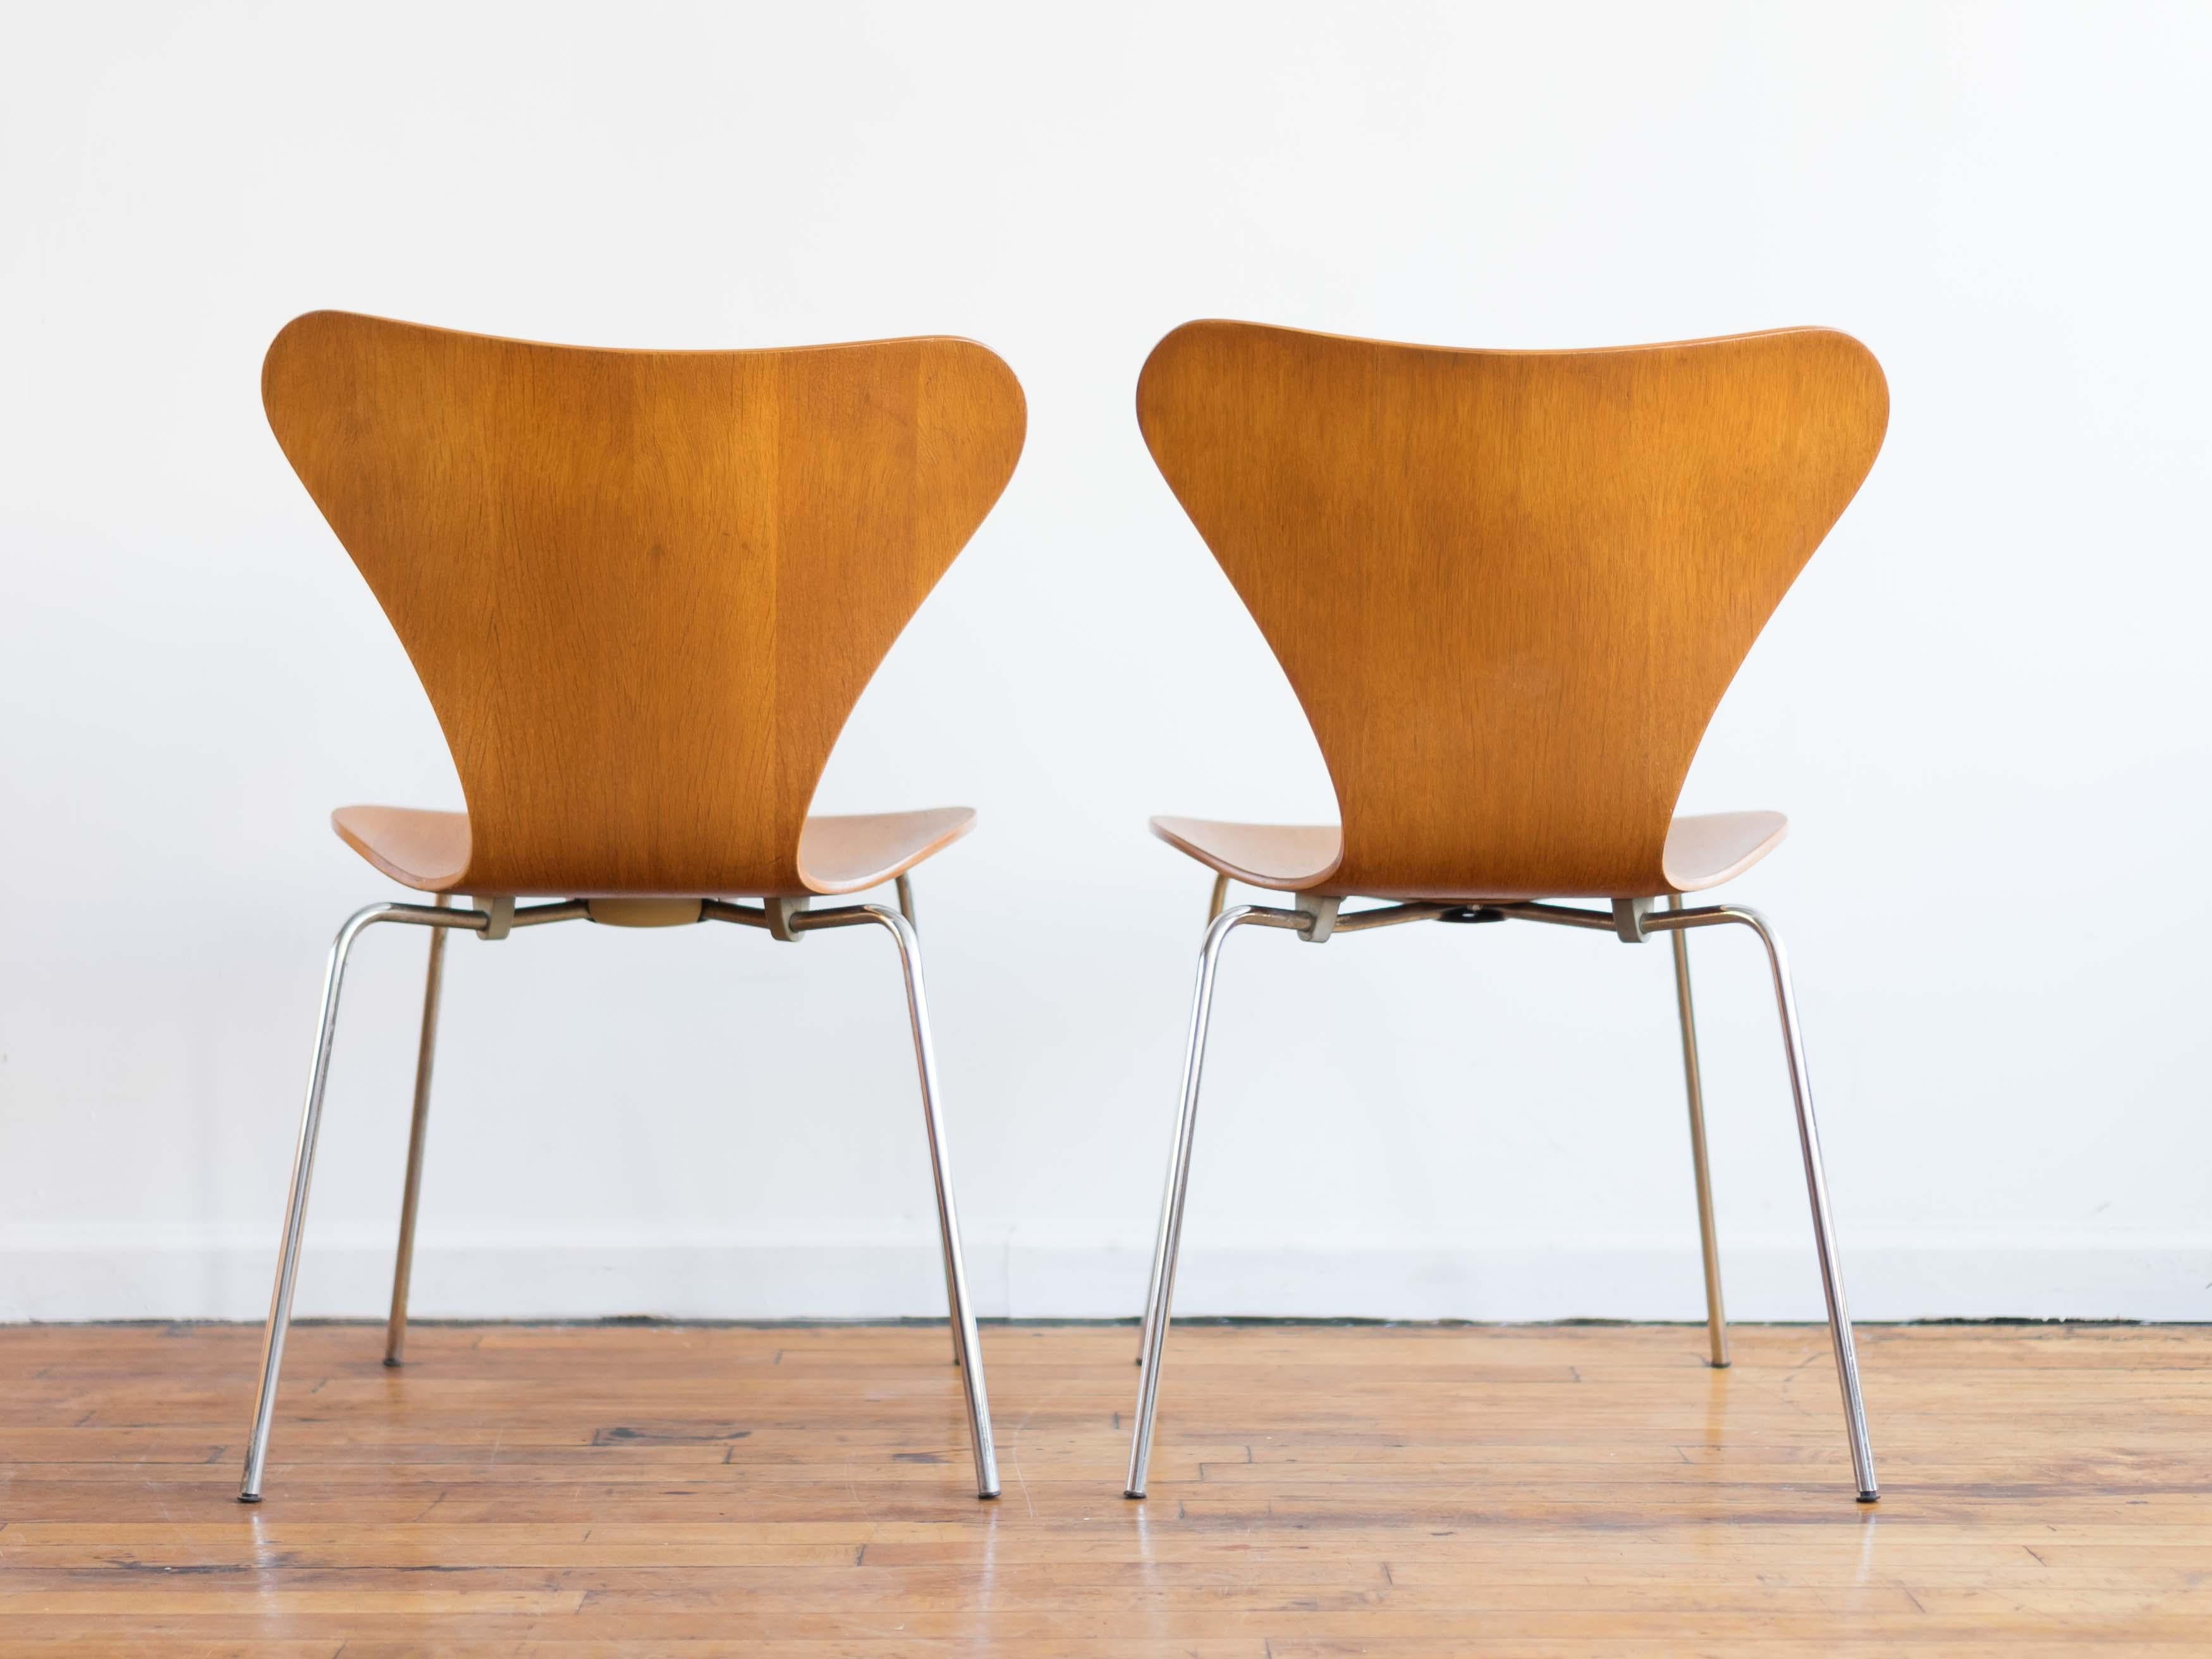 Paire de chaises papillon emblématiques d'Arne Jacobson, conçues pour Fritz Hansen dans les années 1950. Fabriqué en contreplaqué cintré en chêne européen avec des pieds chromés. Le chêne scié en long présente magnifiquement ses mouchetures et ses